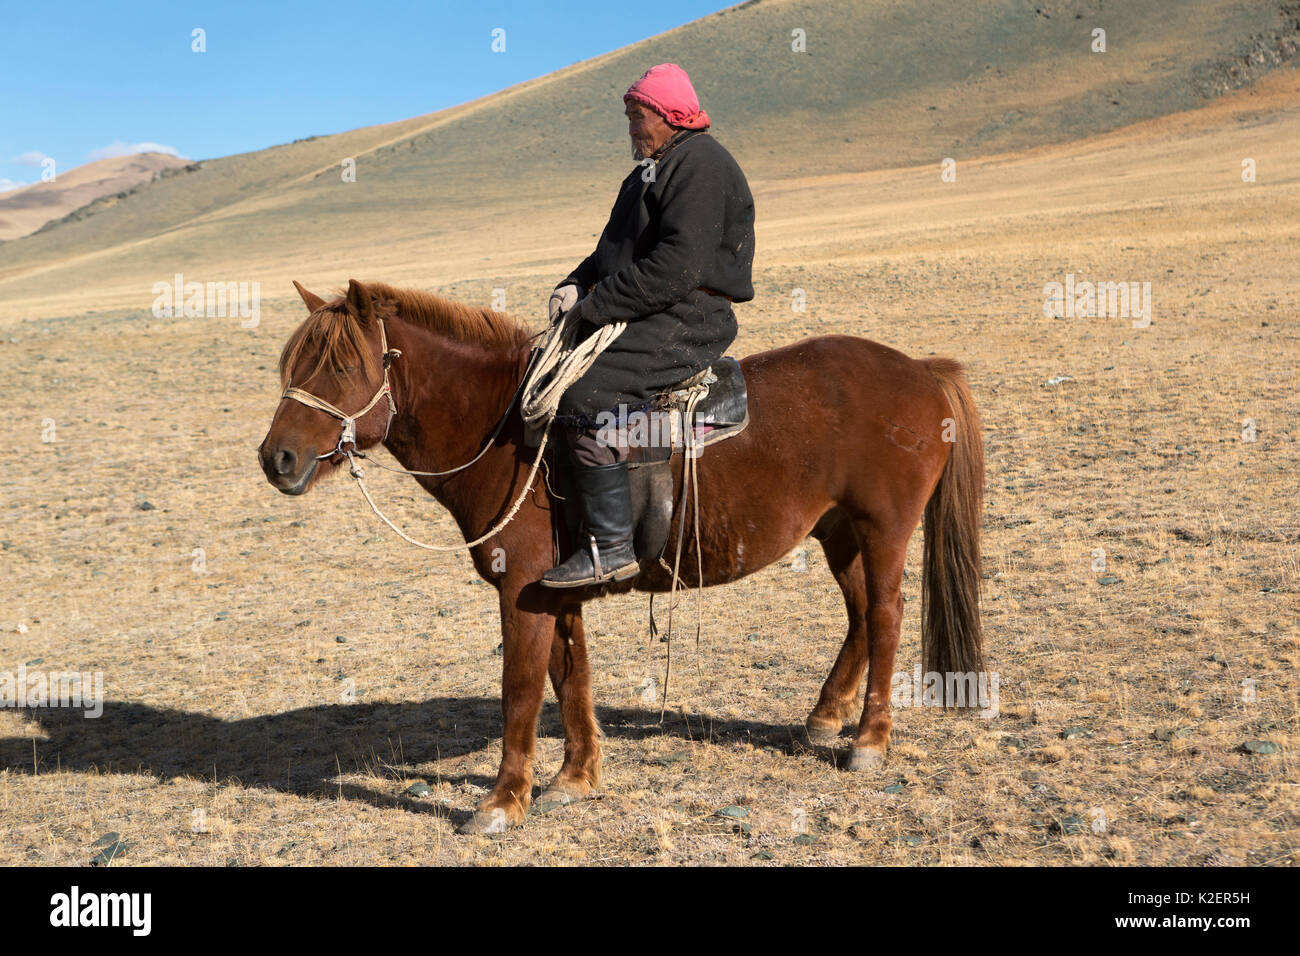 Hersdman Tuva sur son cheval mongol, Tsengel Khairkhan, près de la frontière avec la Chine et le Kazakhstan, la Mongolie, aymag Bayan-Olgiy. Septembre. Banque D'Images